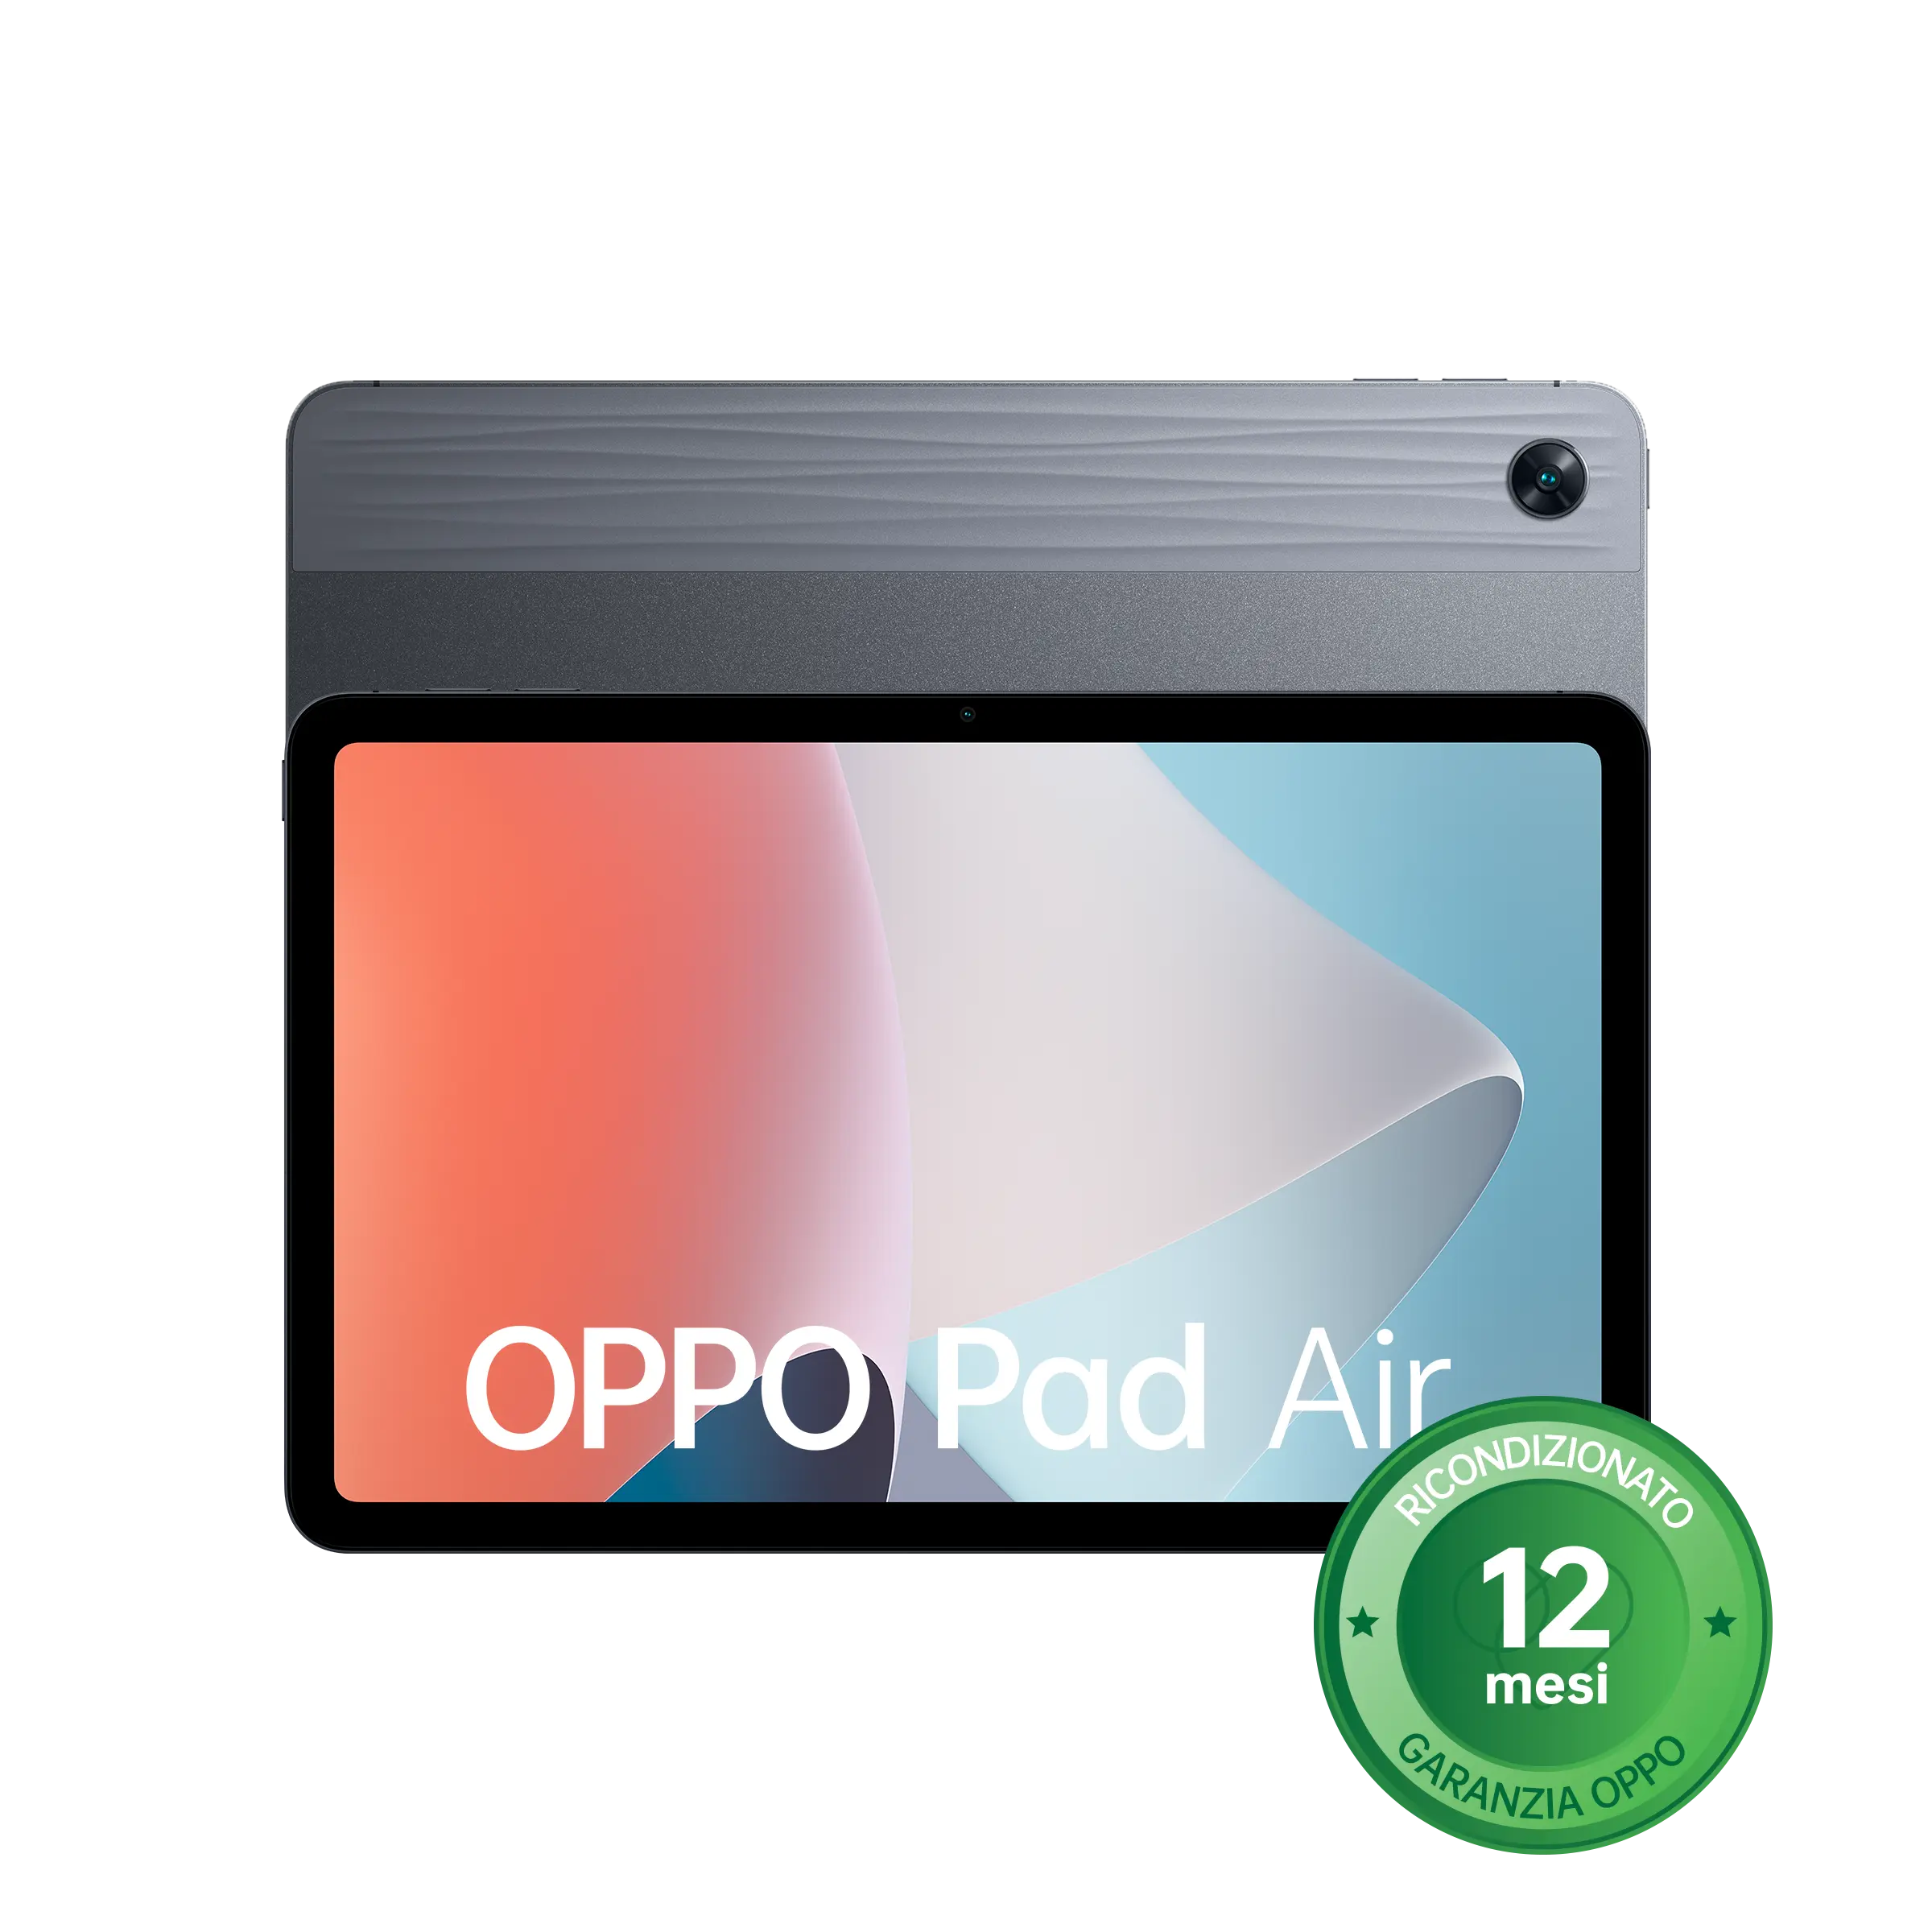 OPPO Pad Air [Ricondizionato]-Lunar Grey A++ 4GB + 64GB-1